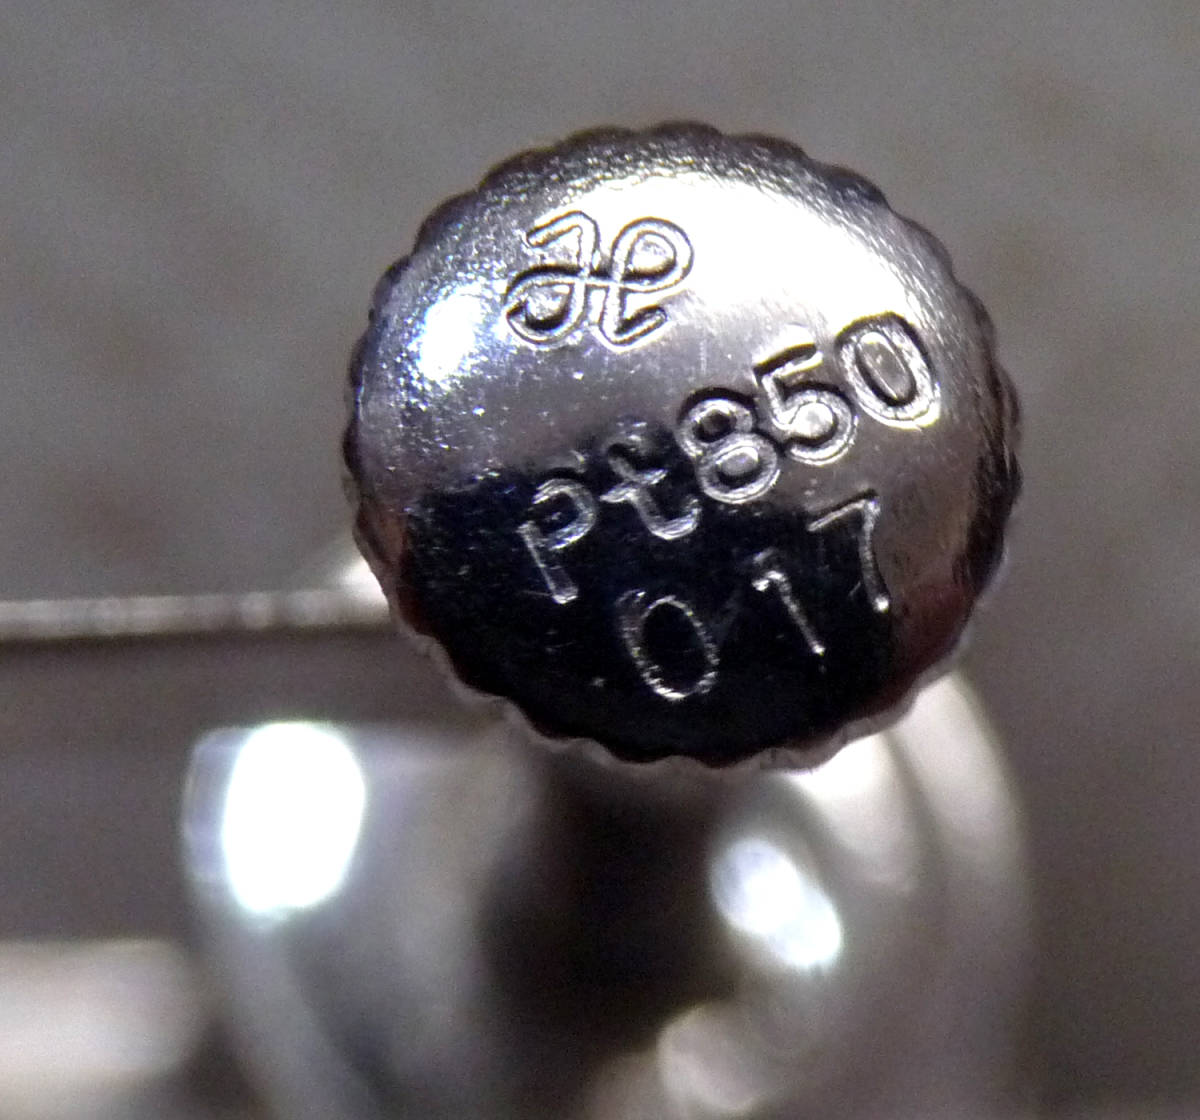  натуральный бриллиант использование 0.17ct платина 850 серьги 1 шт продажа б/у как есть Pt850